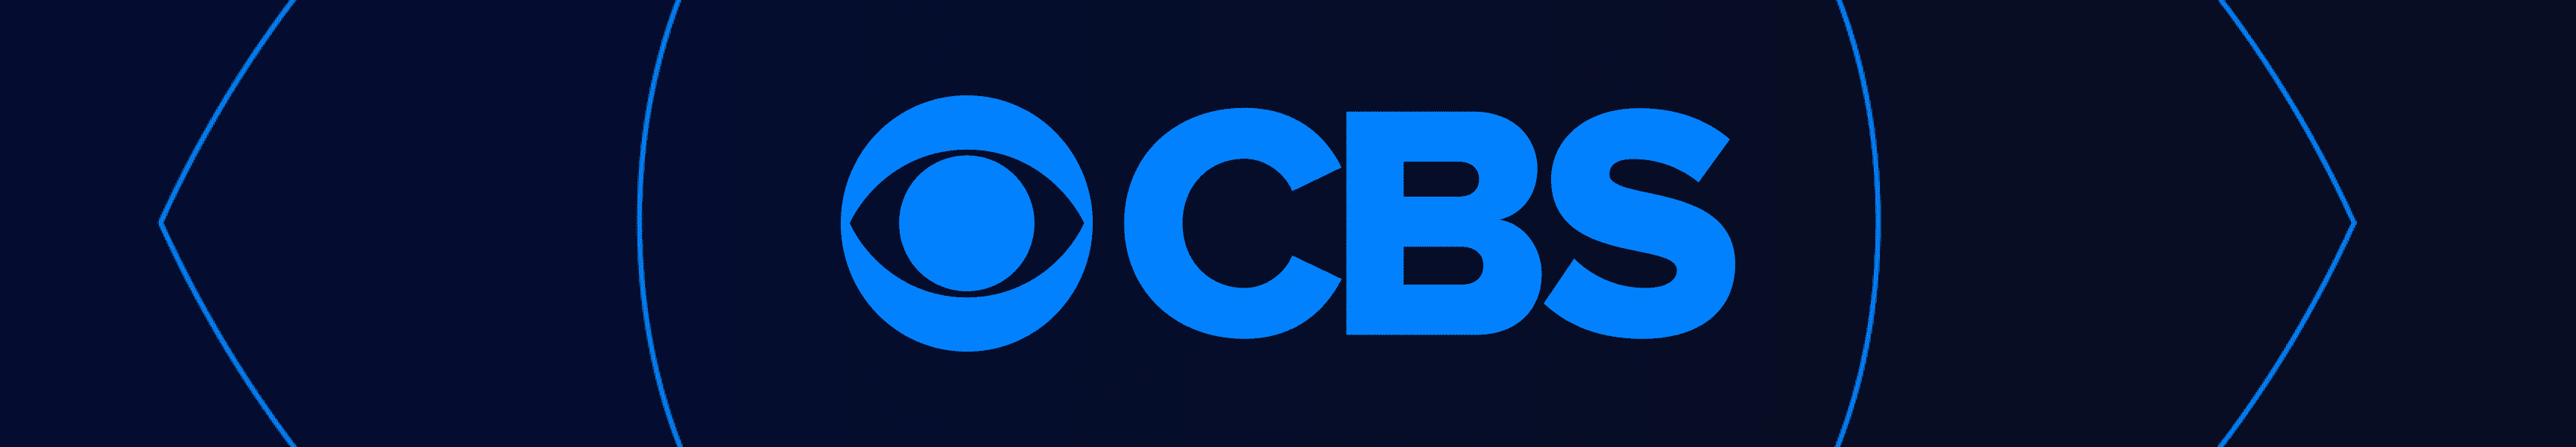 CBS Unterhaltung Roben